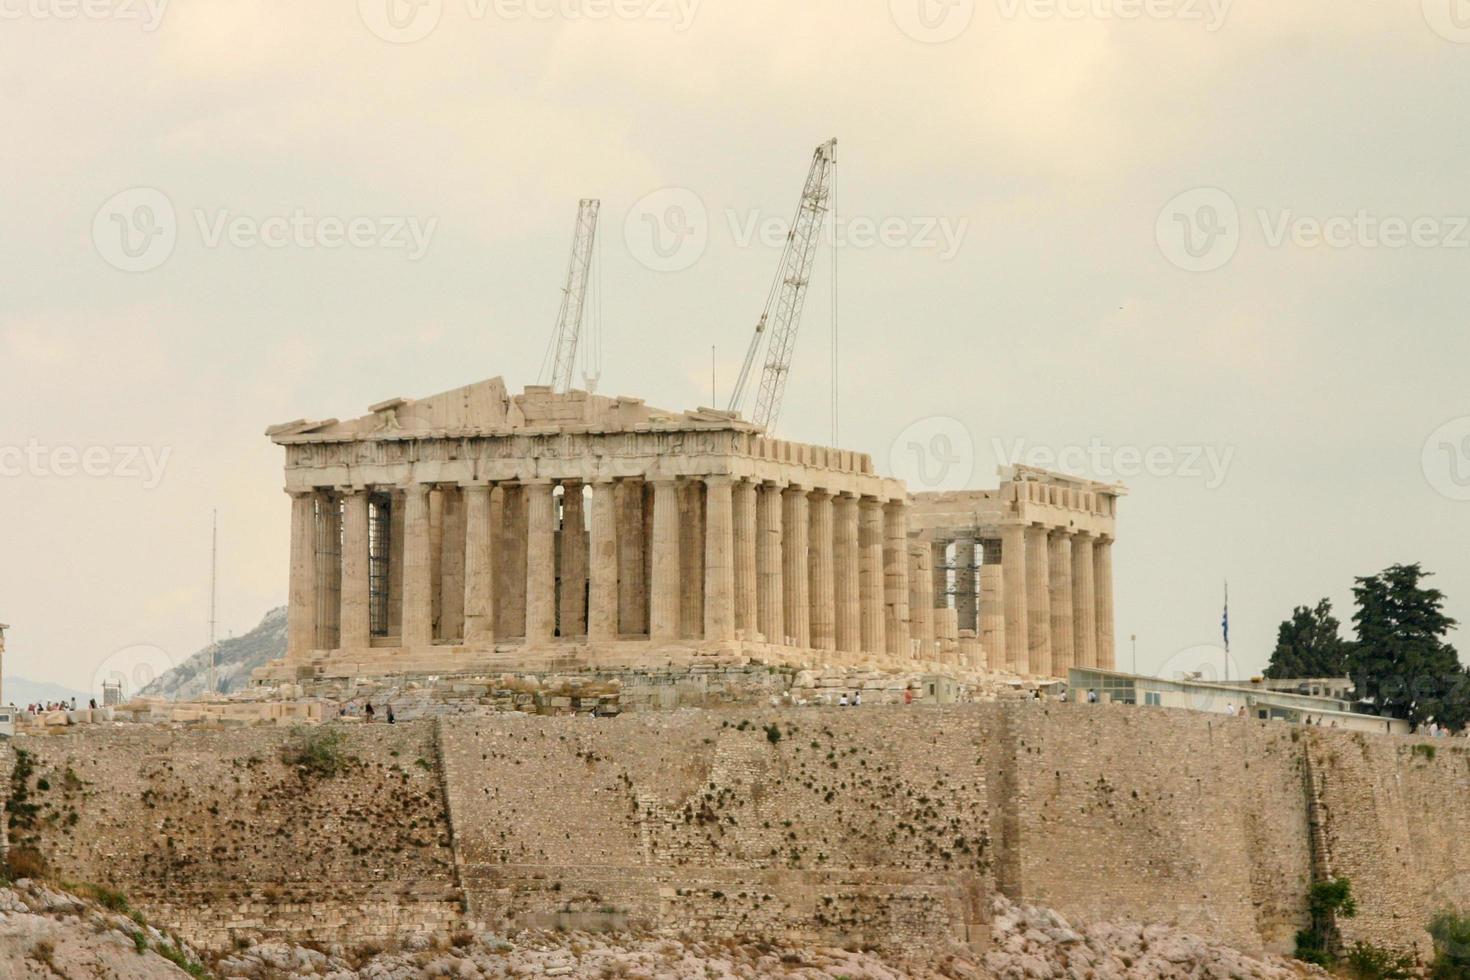 restauration en cours au parthénon au sommet de l'acropole à Athènes, Grèce photo